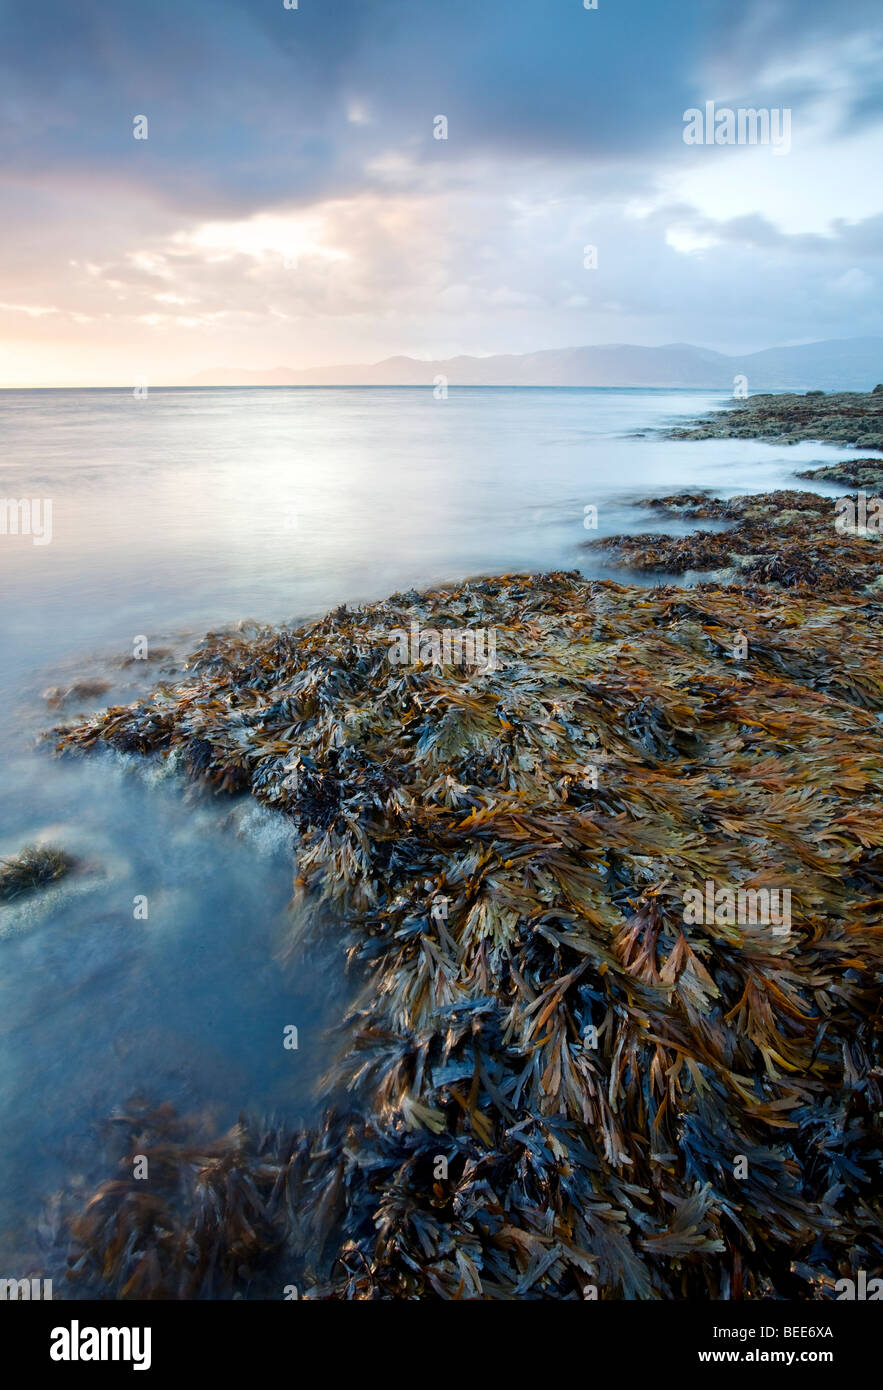 Rocas cubiertas de algas al amanecer mirando hacia Snowdomia en Gales del Norte, visto aquí desde el punto de Penmon en la isla de Anglesey Foto de stock